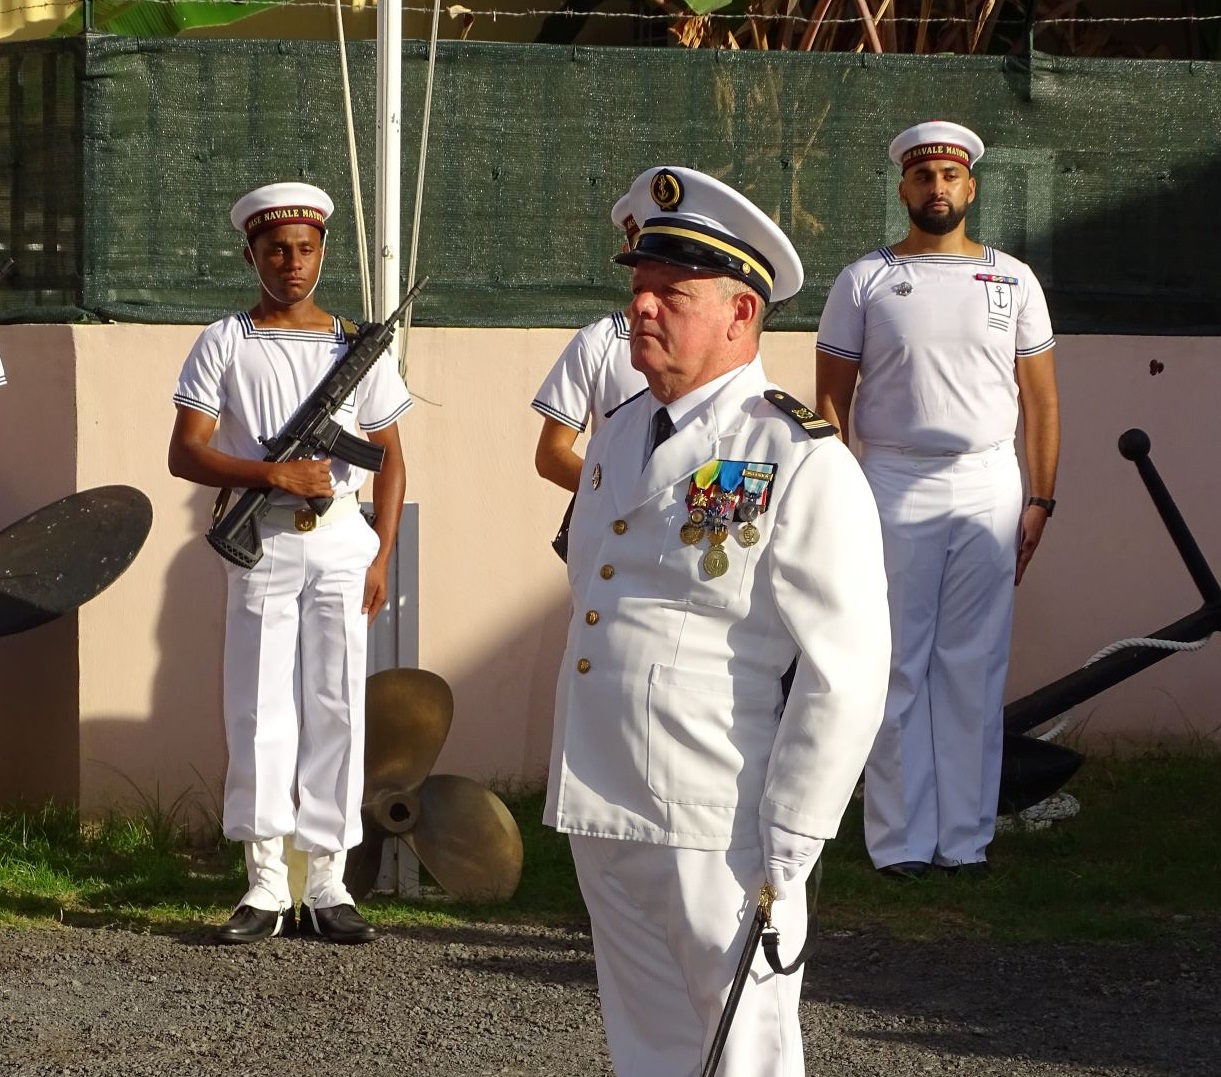  Le major Jean-François quitte le bord après plus de 42 années de service